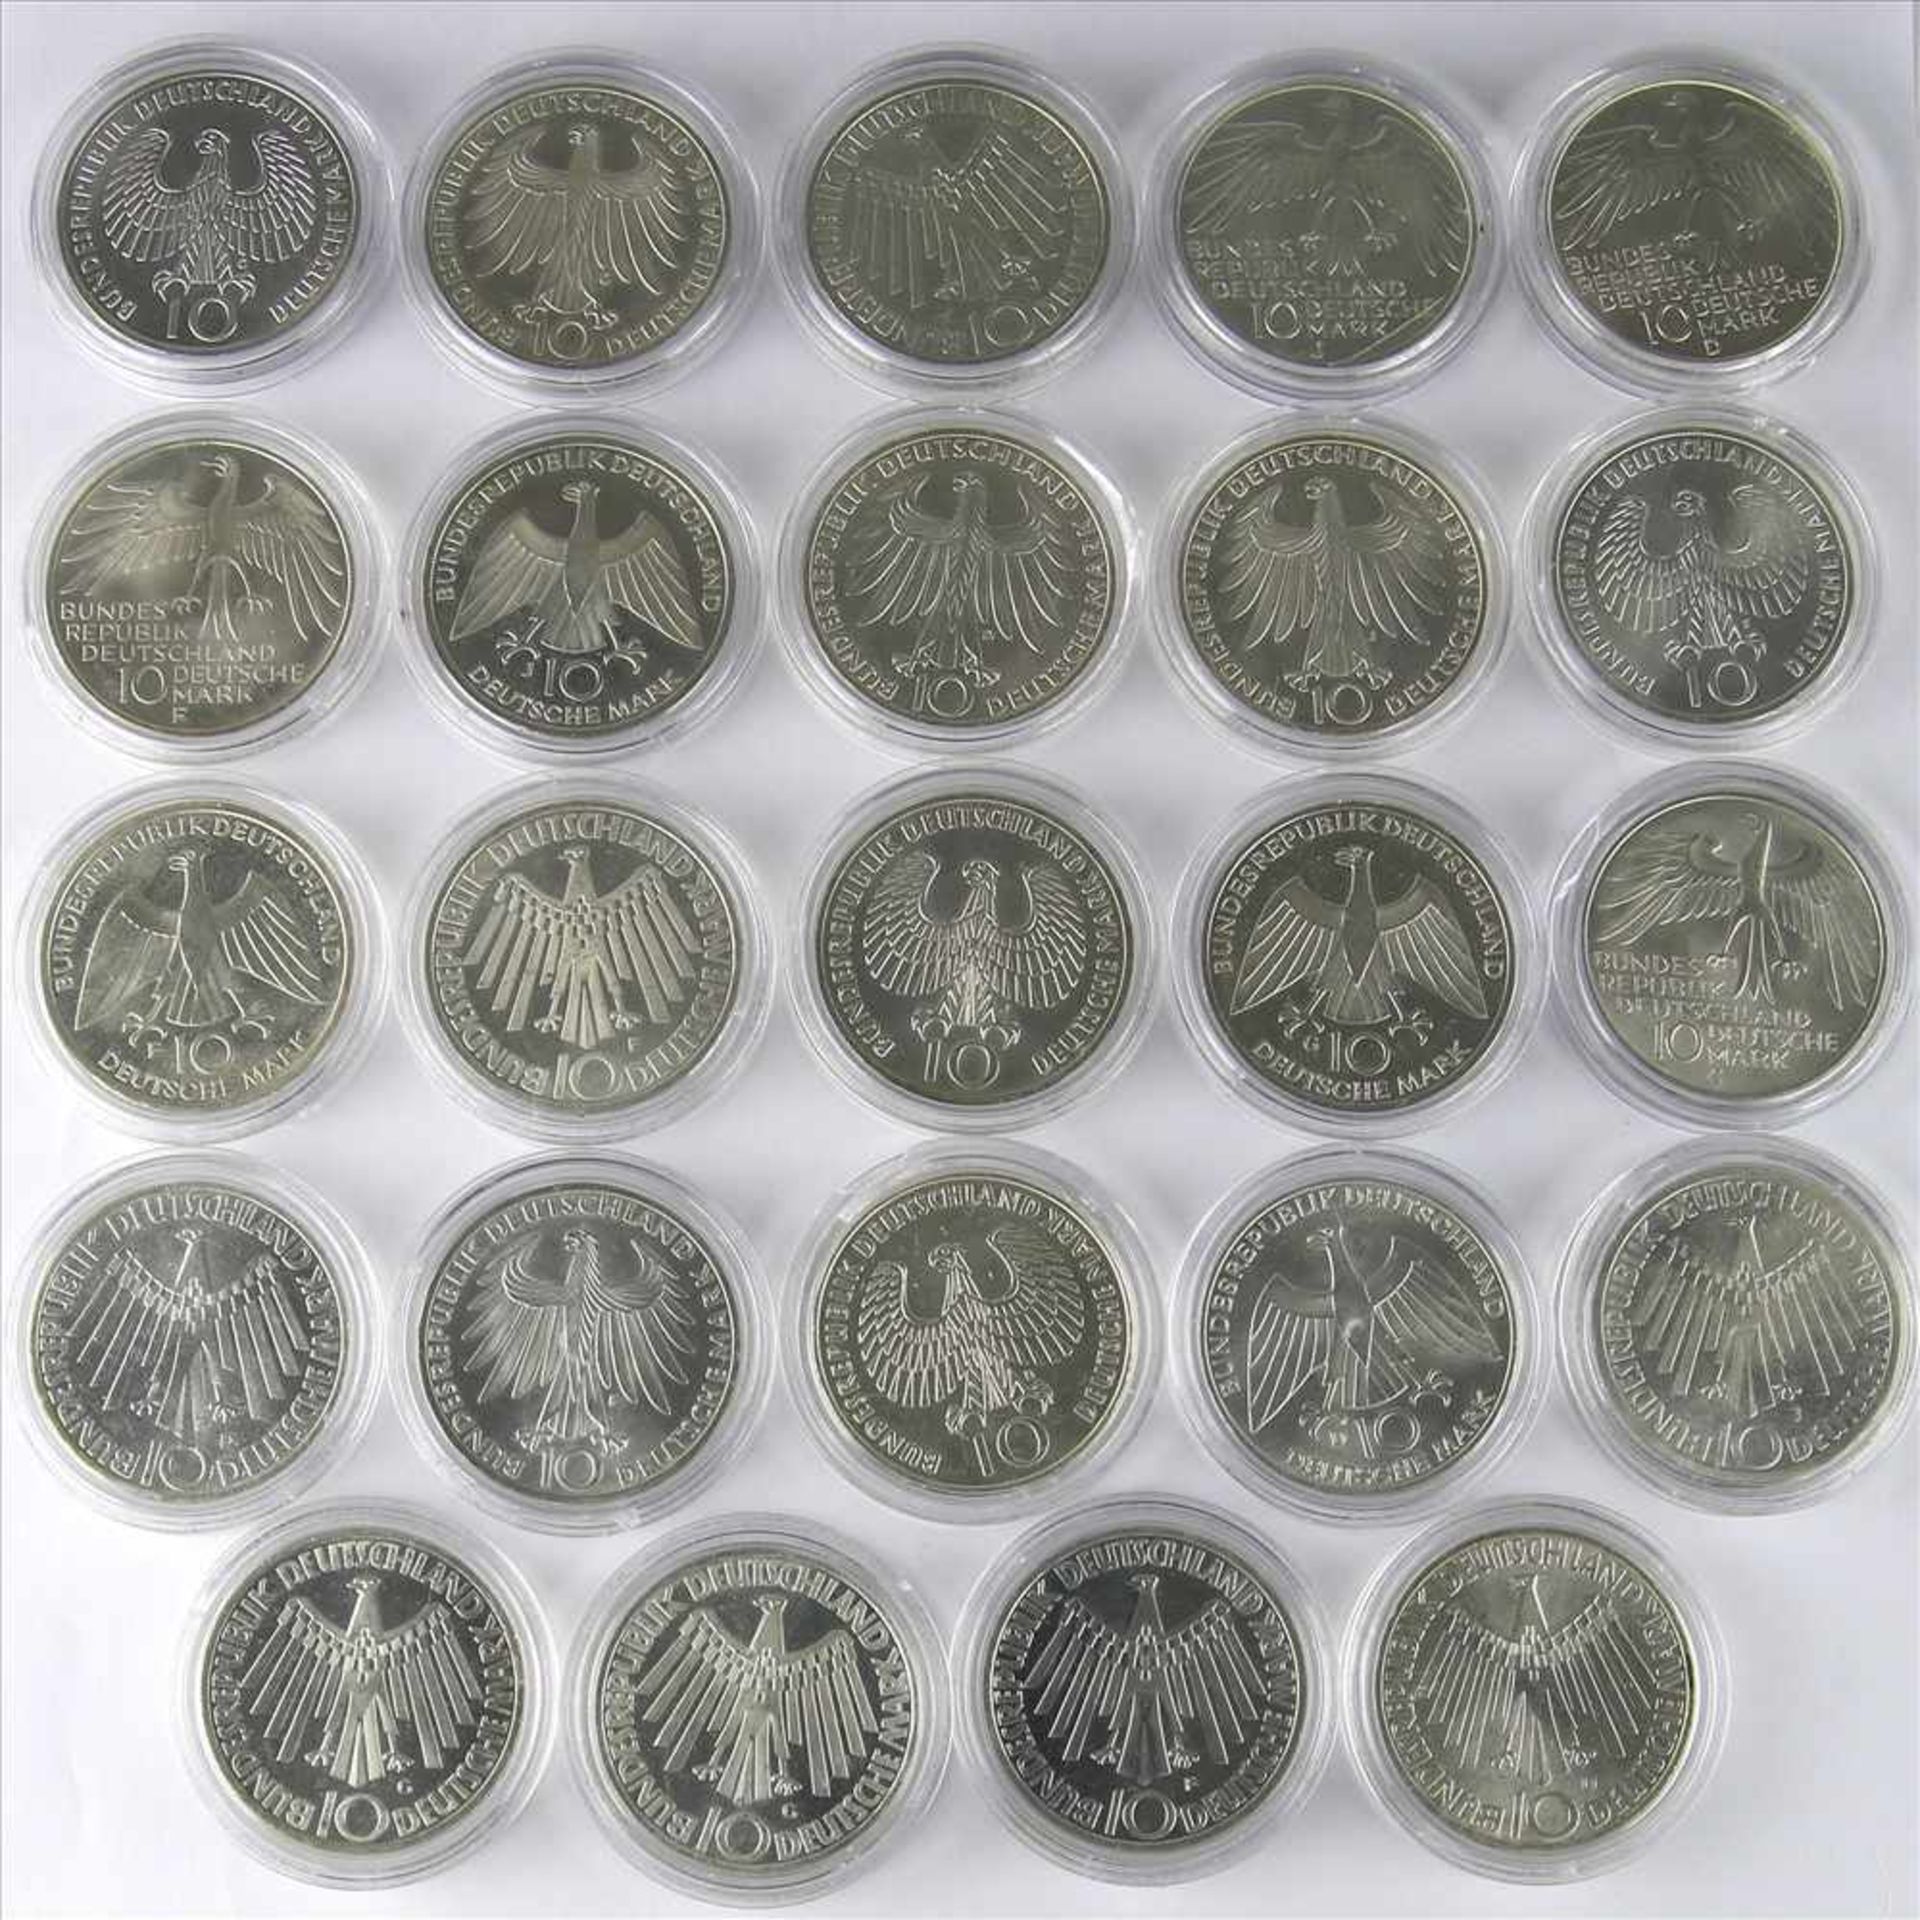 24 OlympiamünzenMünchen 1972. 10 DM. 6 Sätze á 4 Münzen (1 x doppelt) Präge D, F, G und J. Jeweils - Bild 2 aus 2